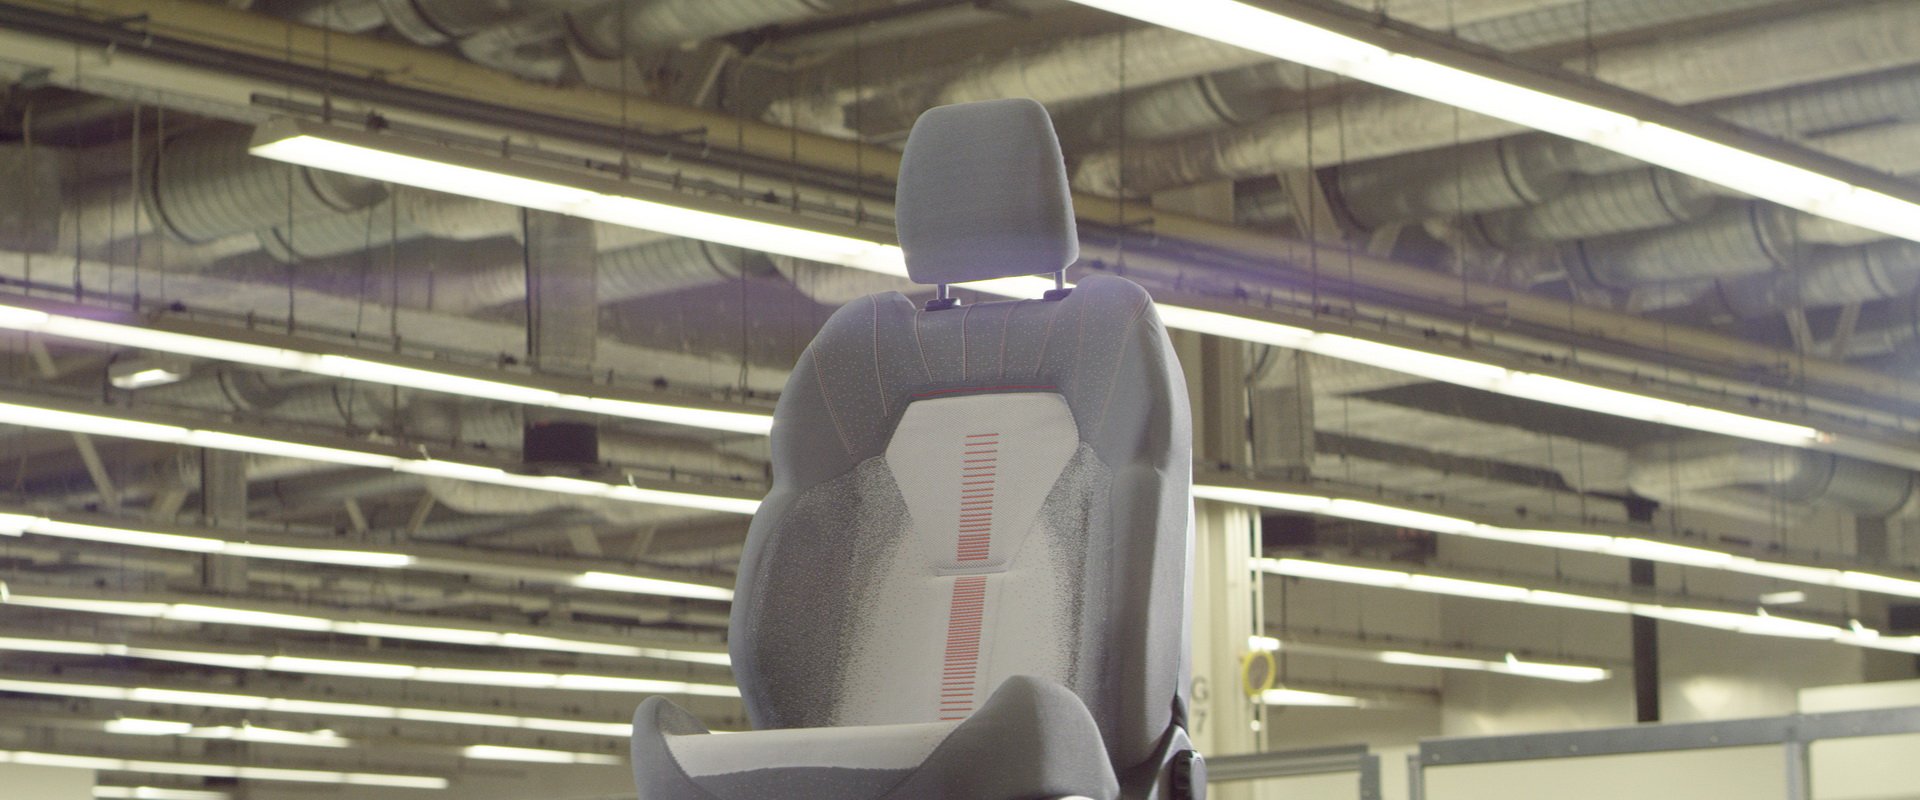 Ford'un 3 boyutlu örgü tekniğiyle üreteceği koltuk kılıfları akıllı telefonları şarj edebilecek